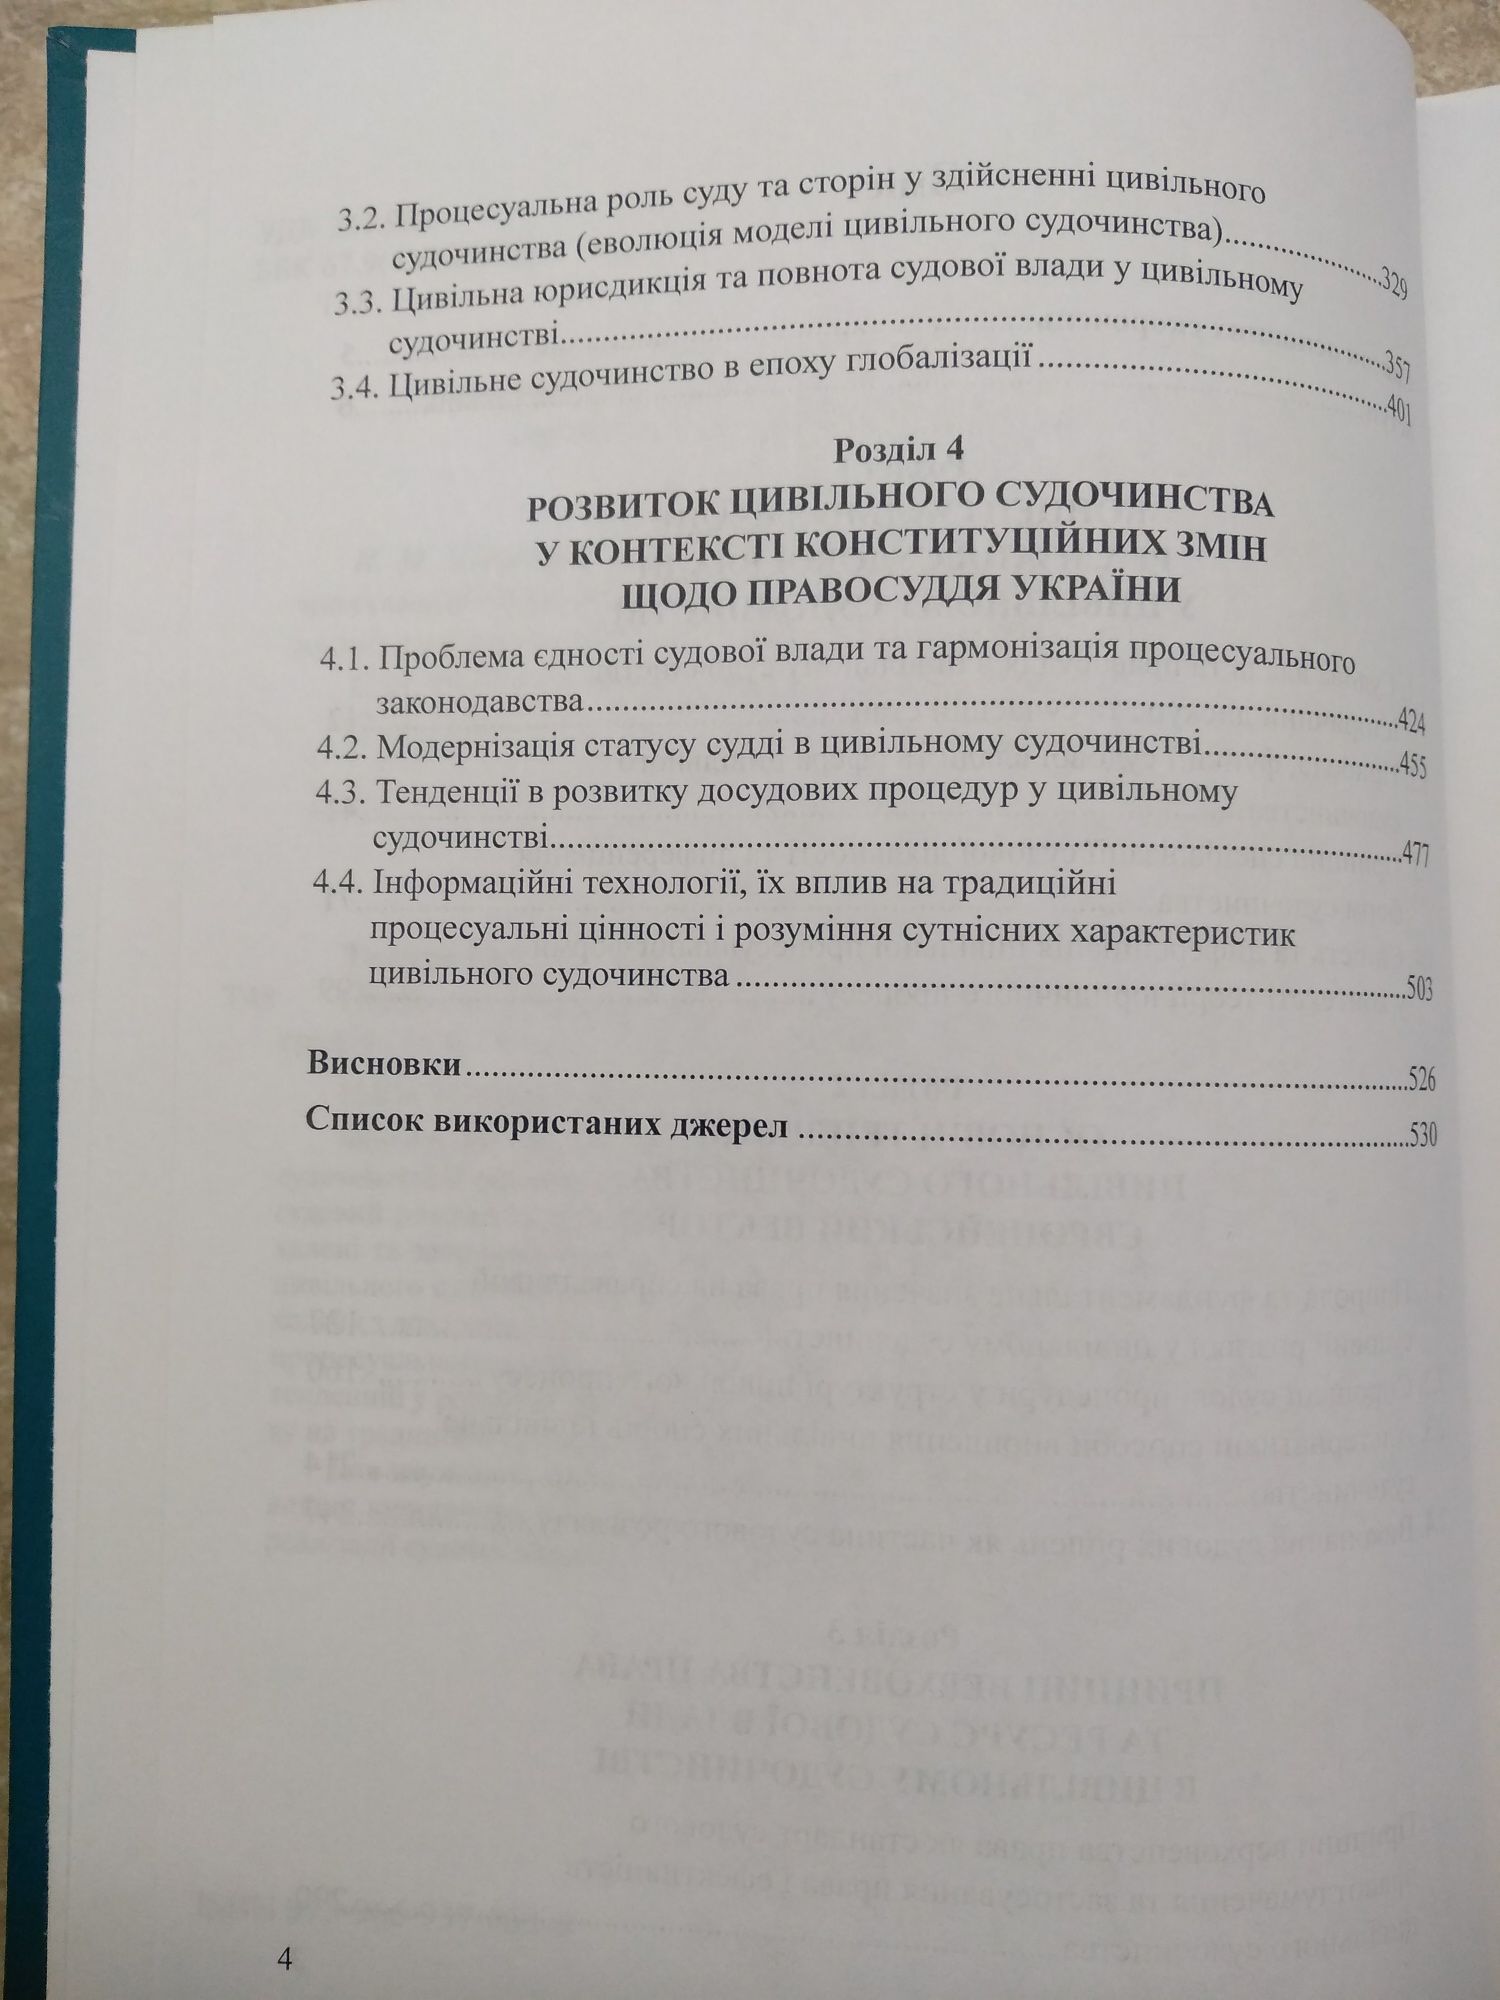 Проблеми реалізації судової влади у цивільному судочинстві О.С.Ткачук